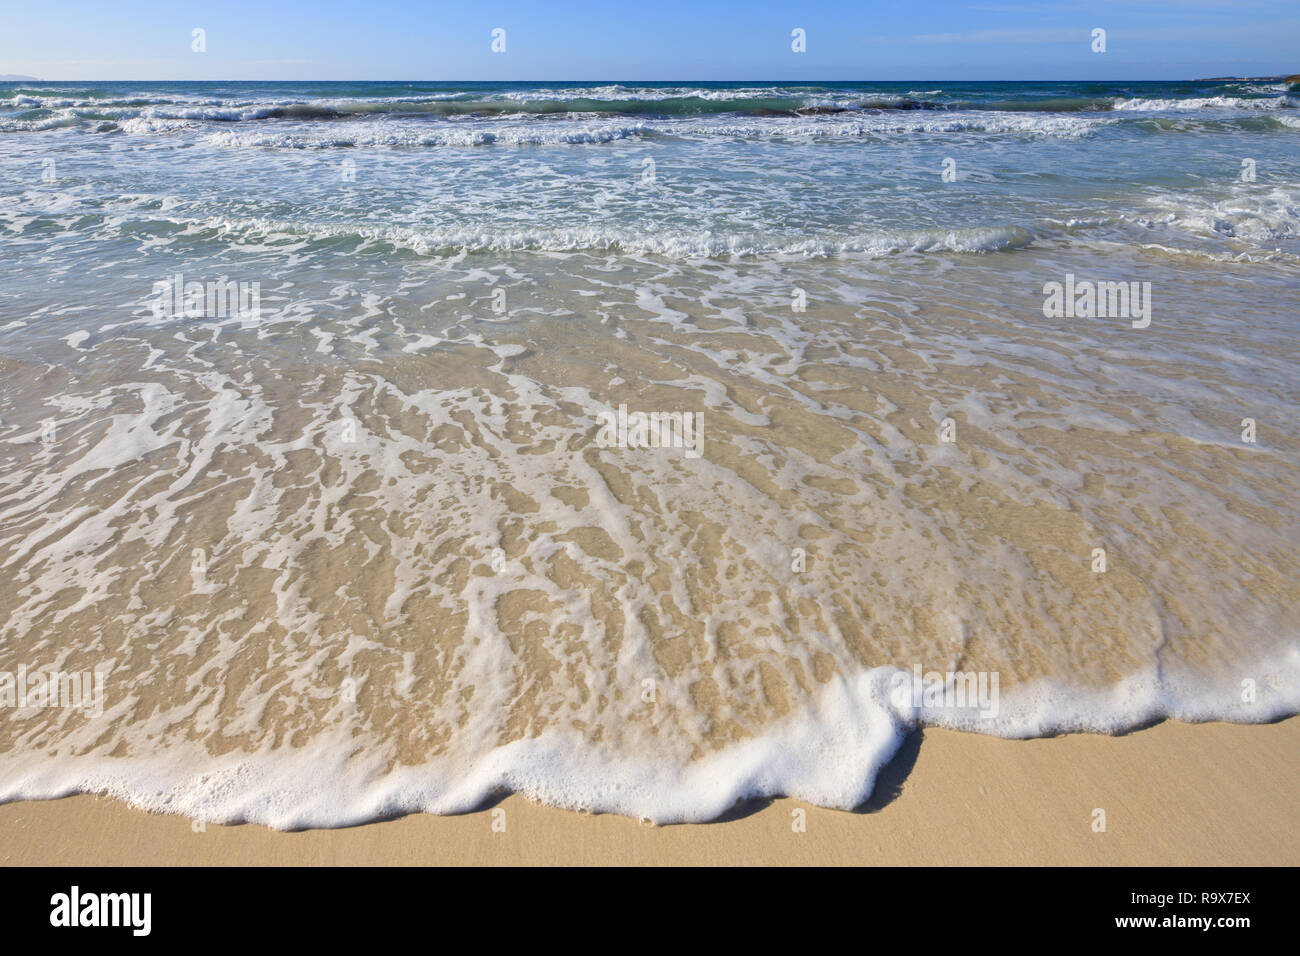 Welle auf die Küste Sandstrand, marine Meer sauber Mittelmeer Es Trenc Mallorca Spanien Stockfoto